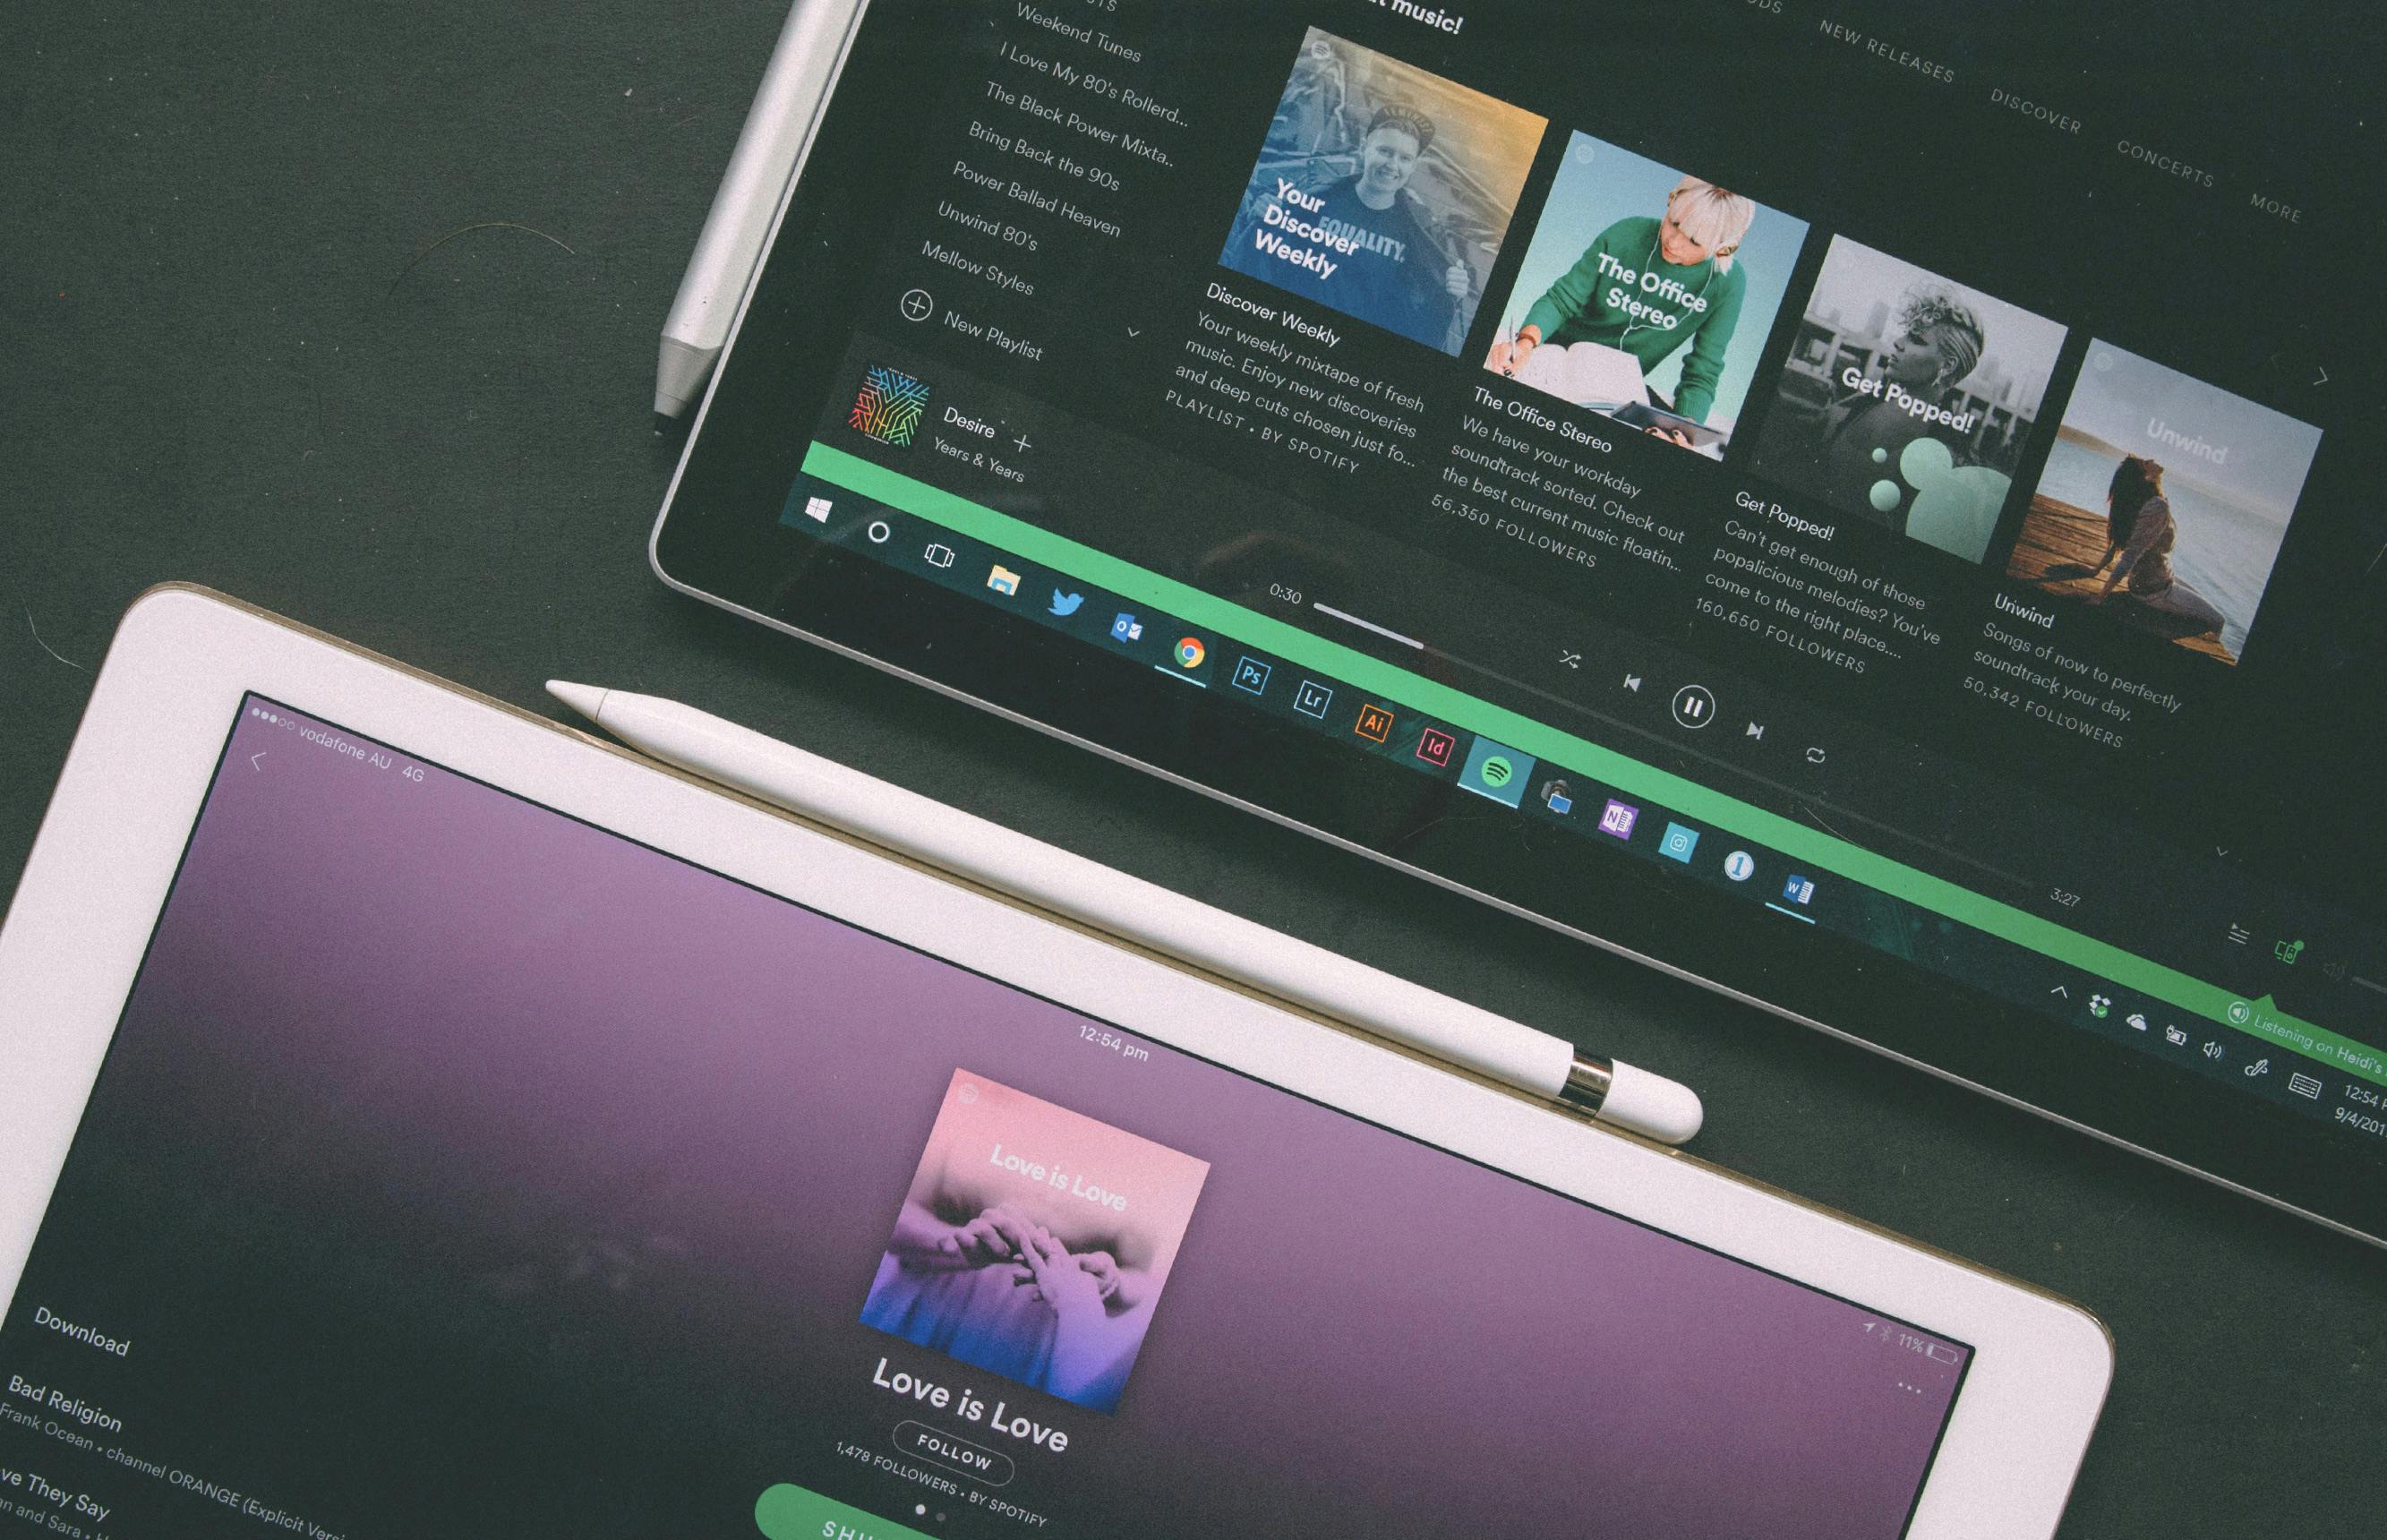 Spotify lost cijfers derde kwartaal